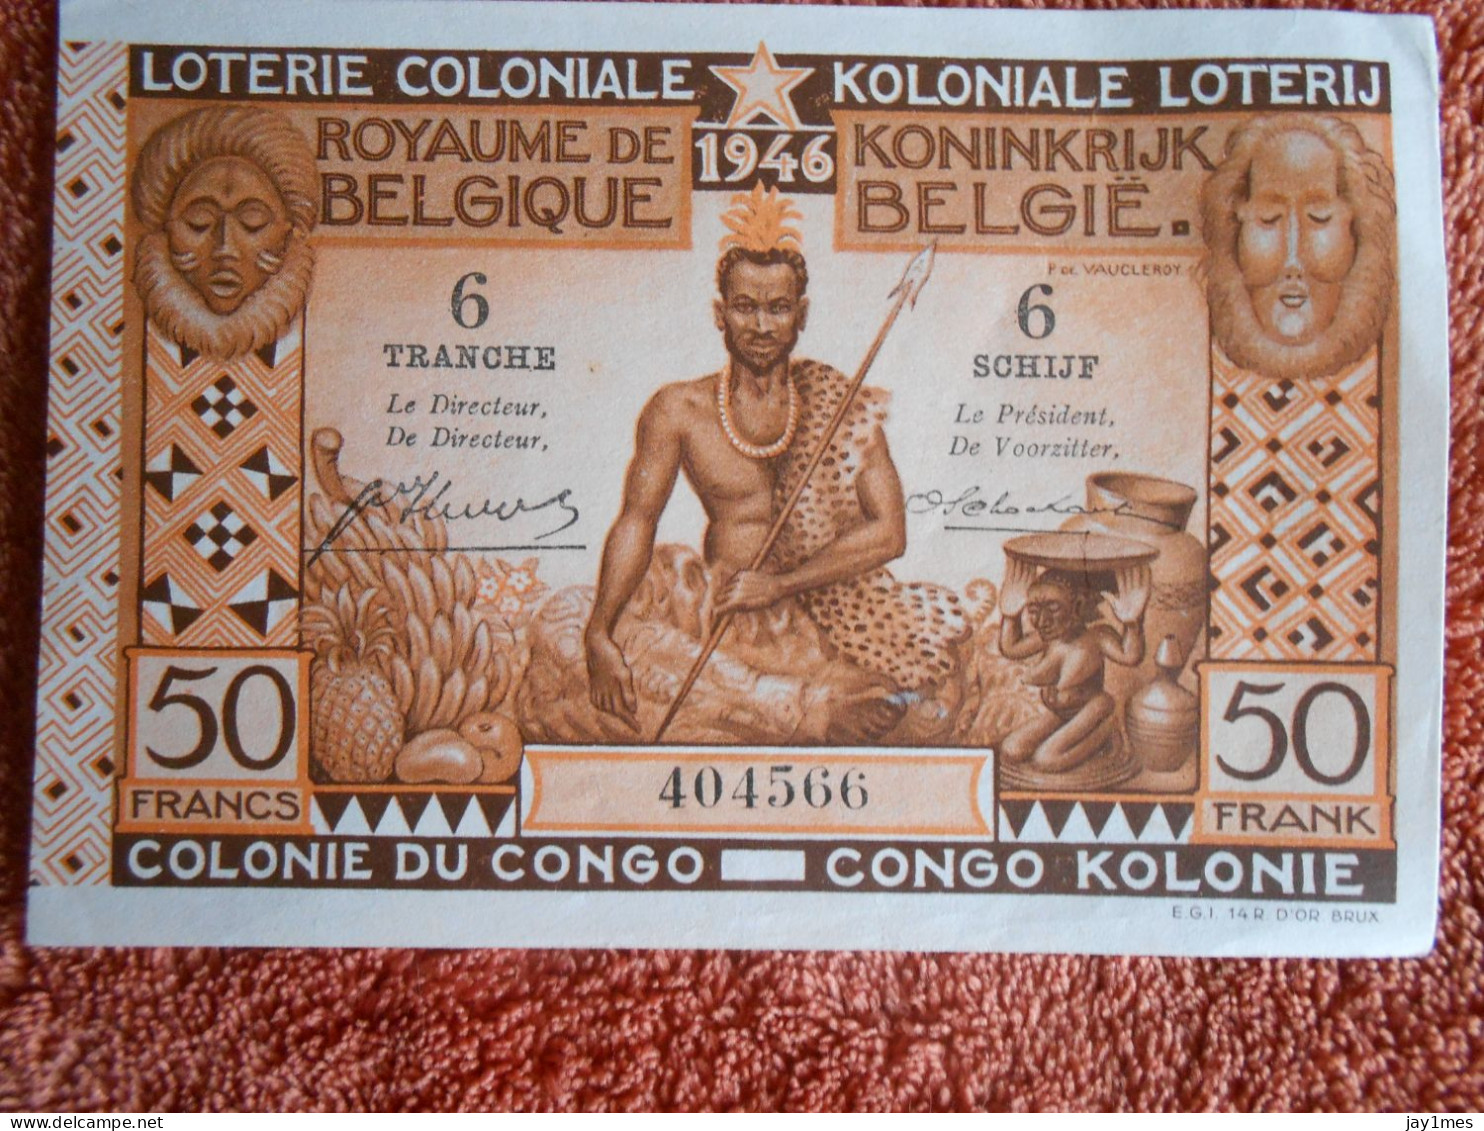 Loterie Coloniale Koloniale Loterij Congo 1946 - Lottery Tickets